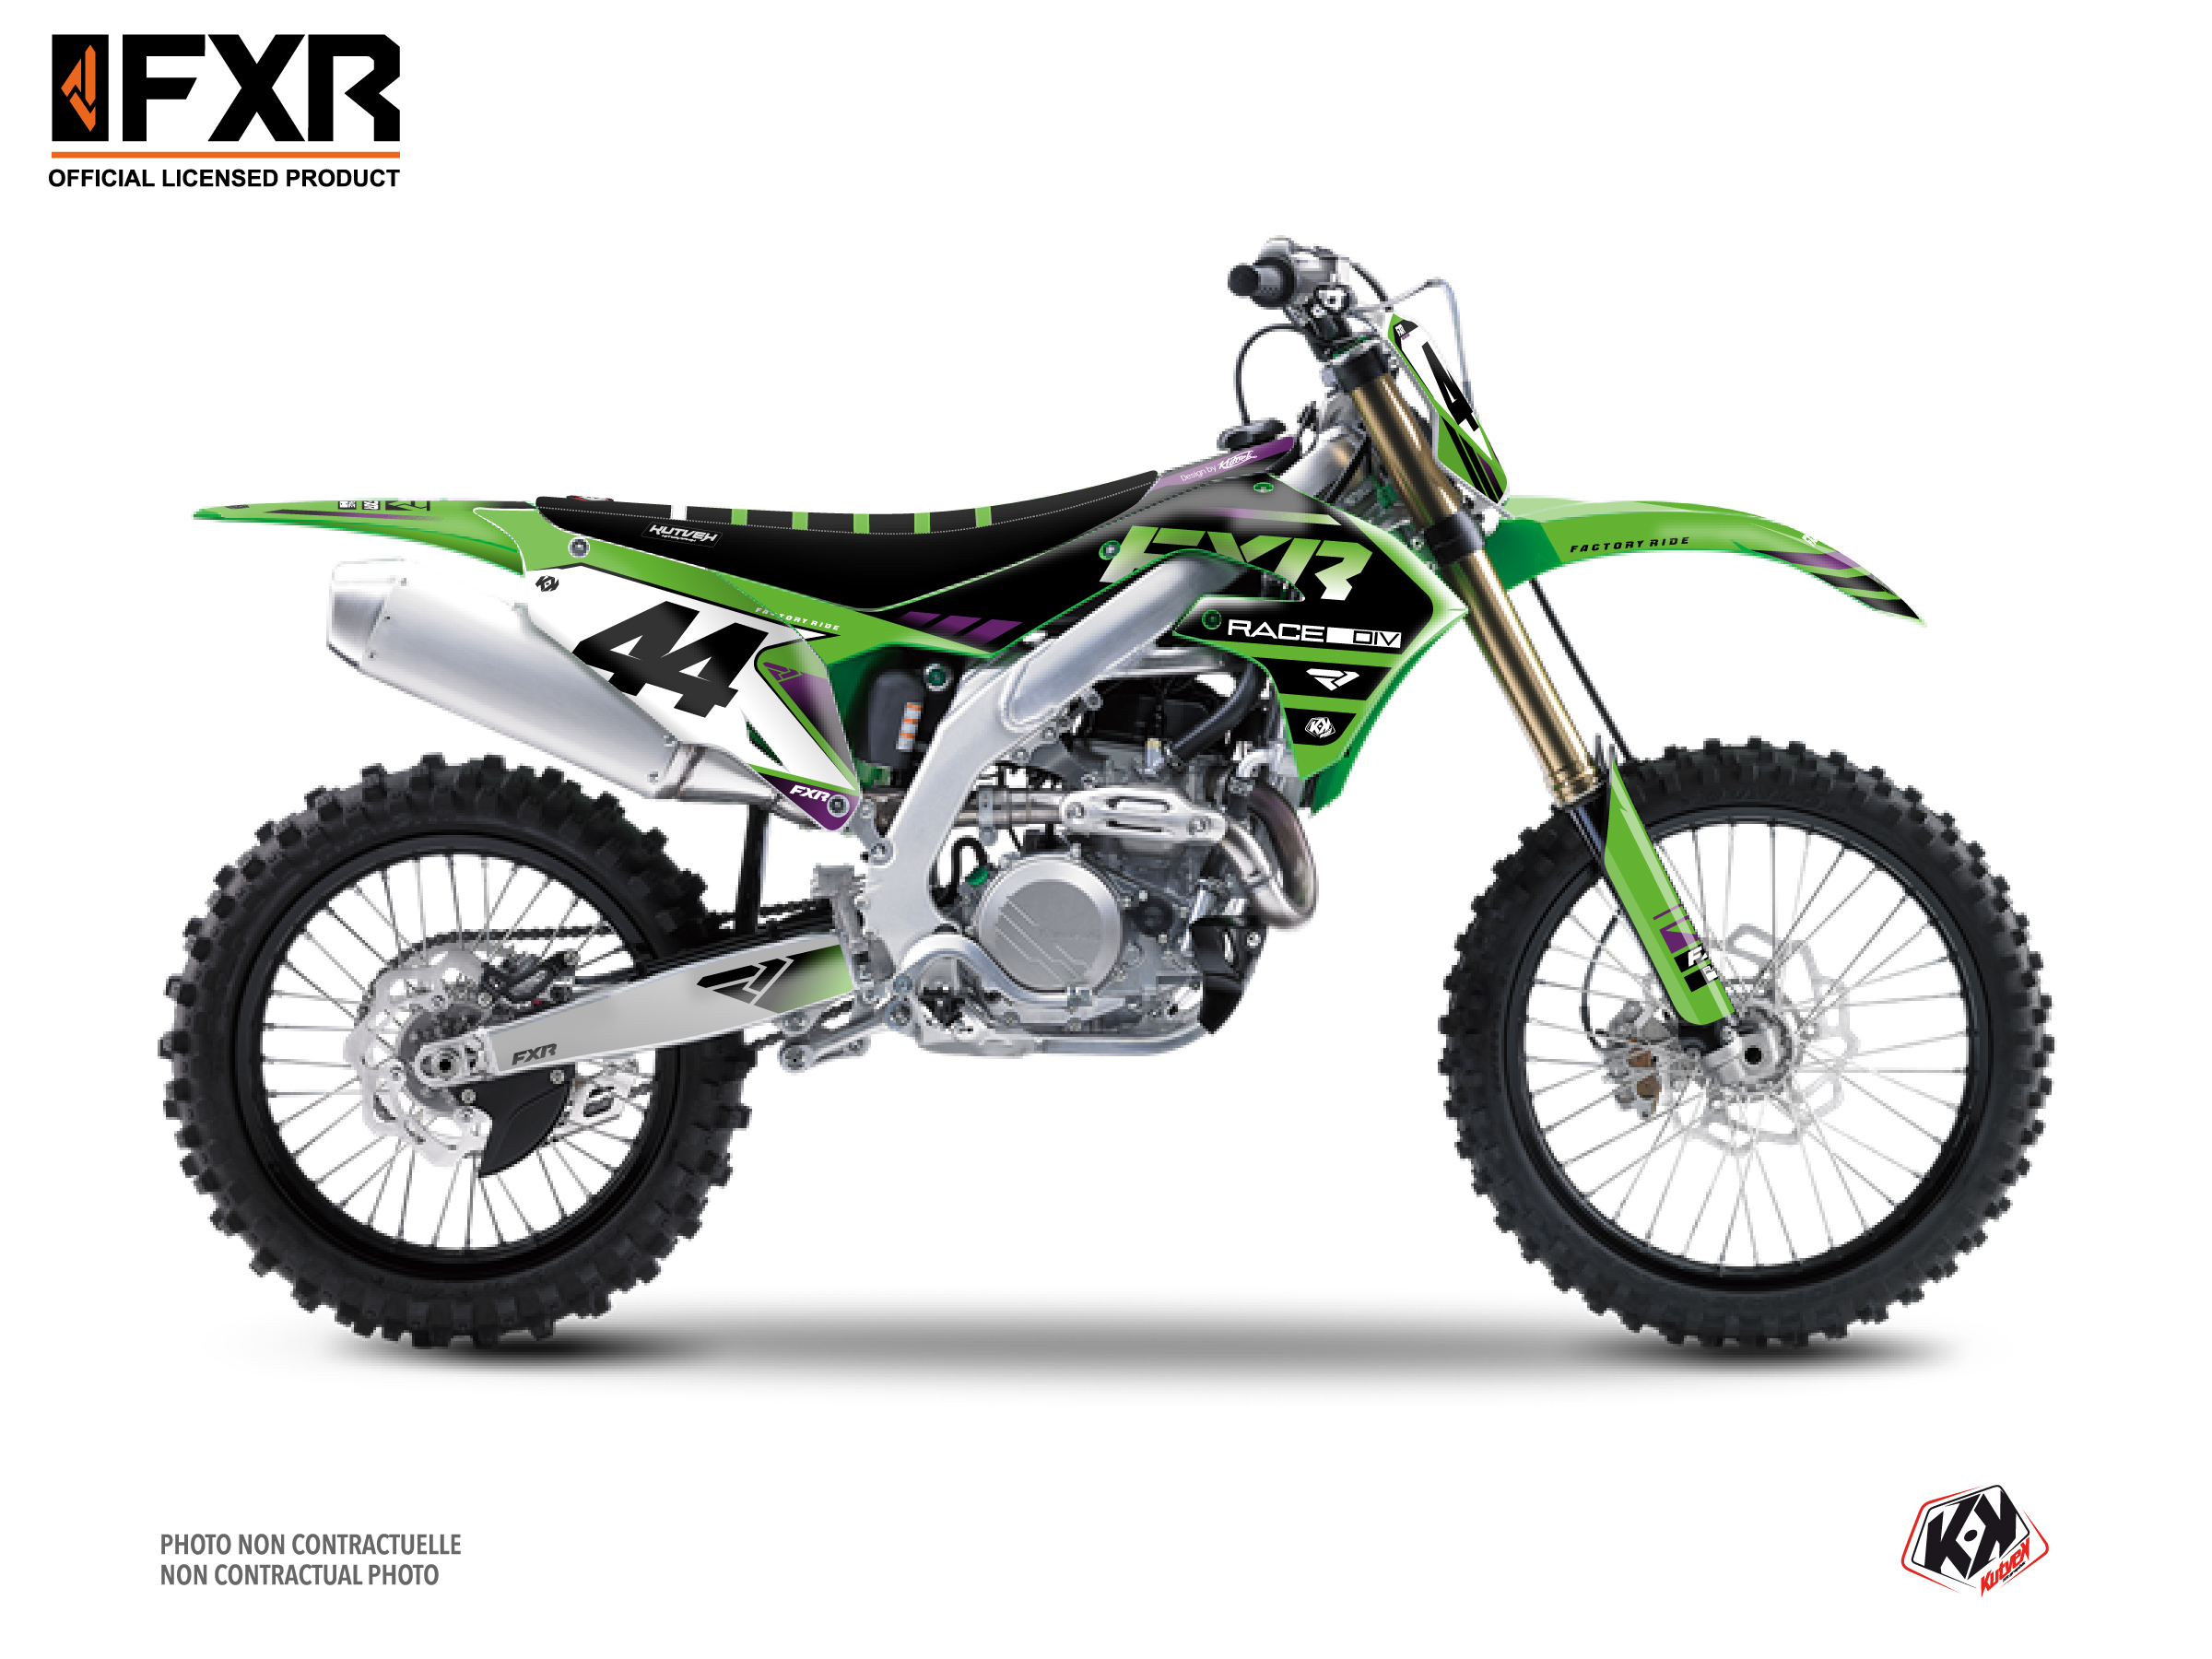 Kawasaki Kx 450 F Dirt Bike Fxr Revo Graphic Kit Green